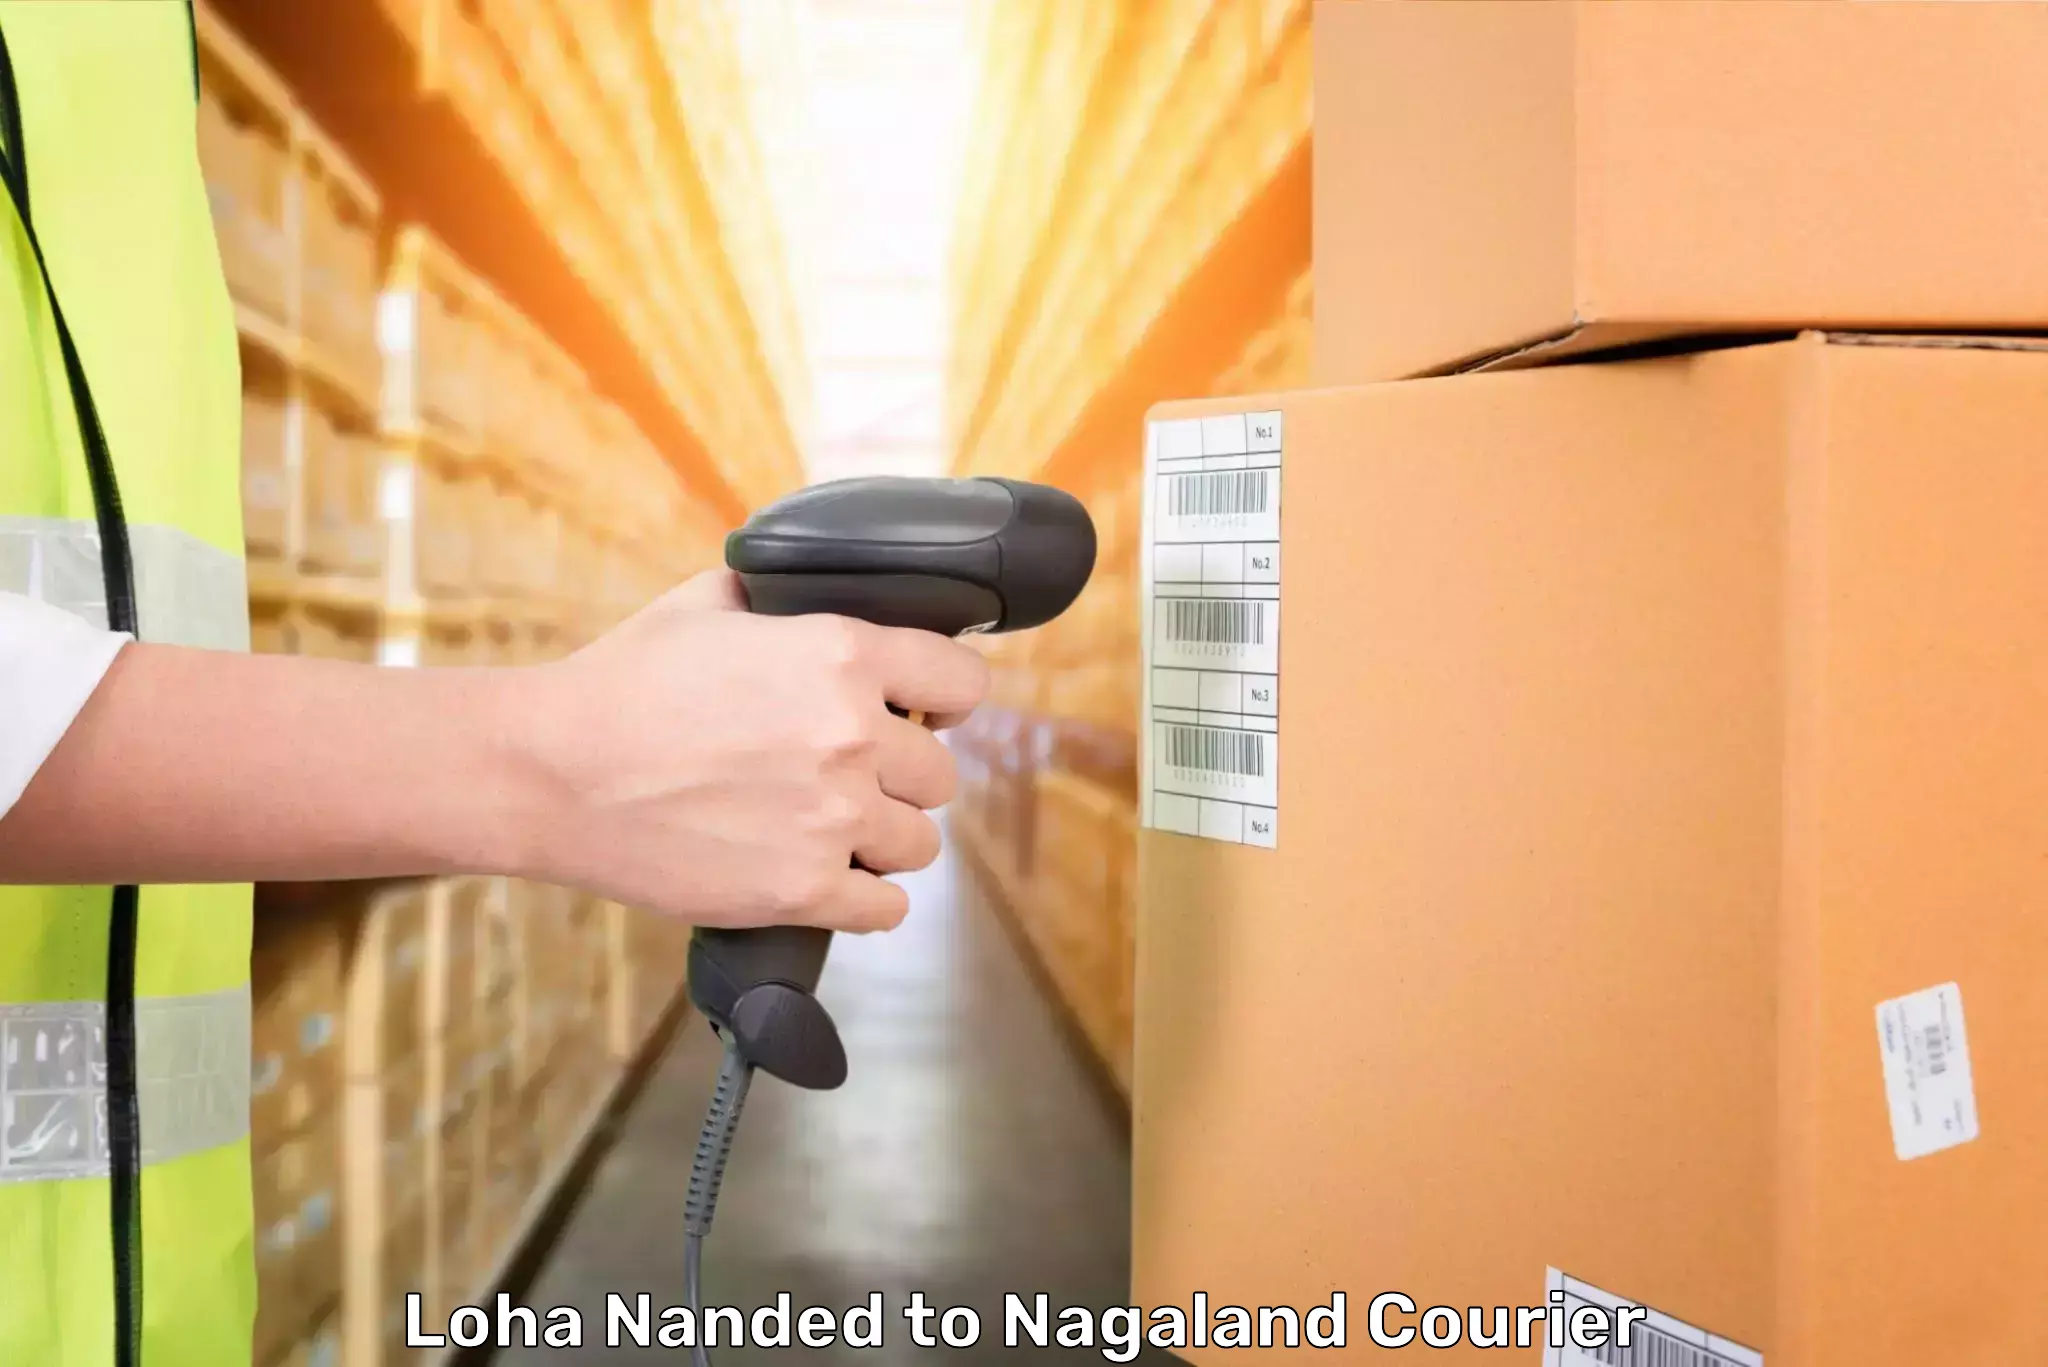 Baggage shipping experts Loha Nanded to Nagaland